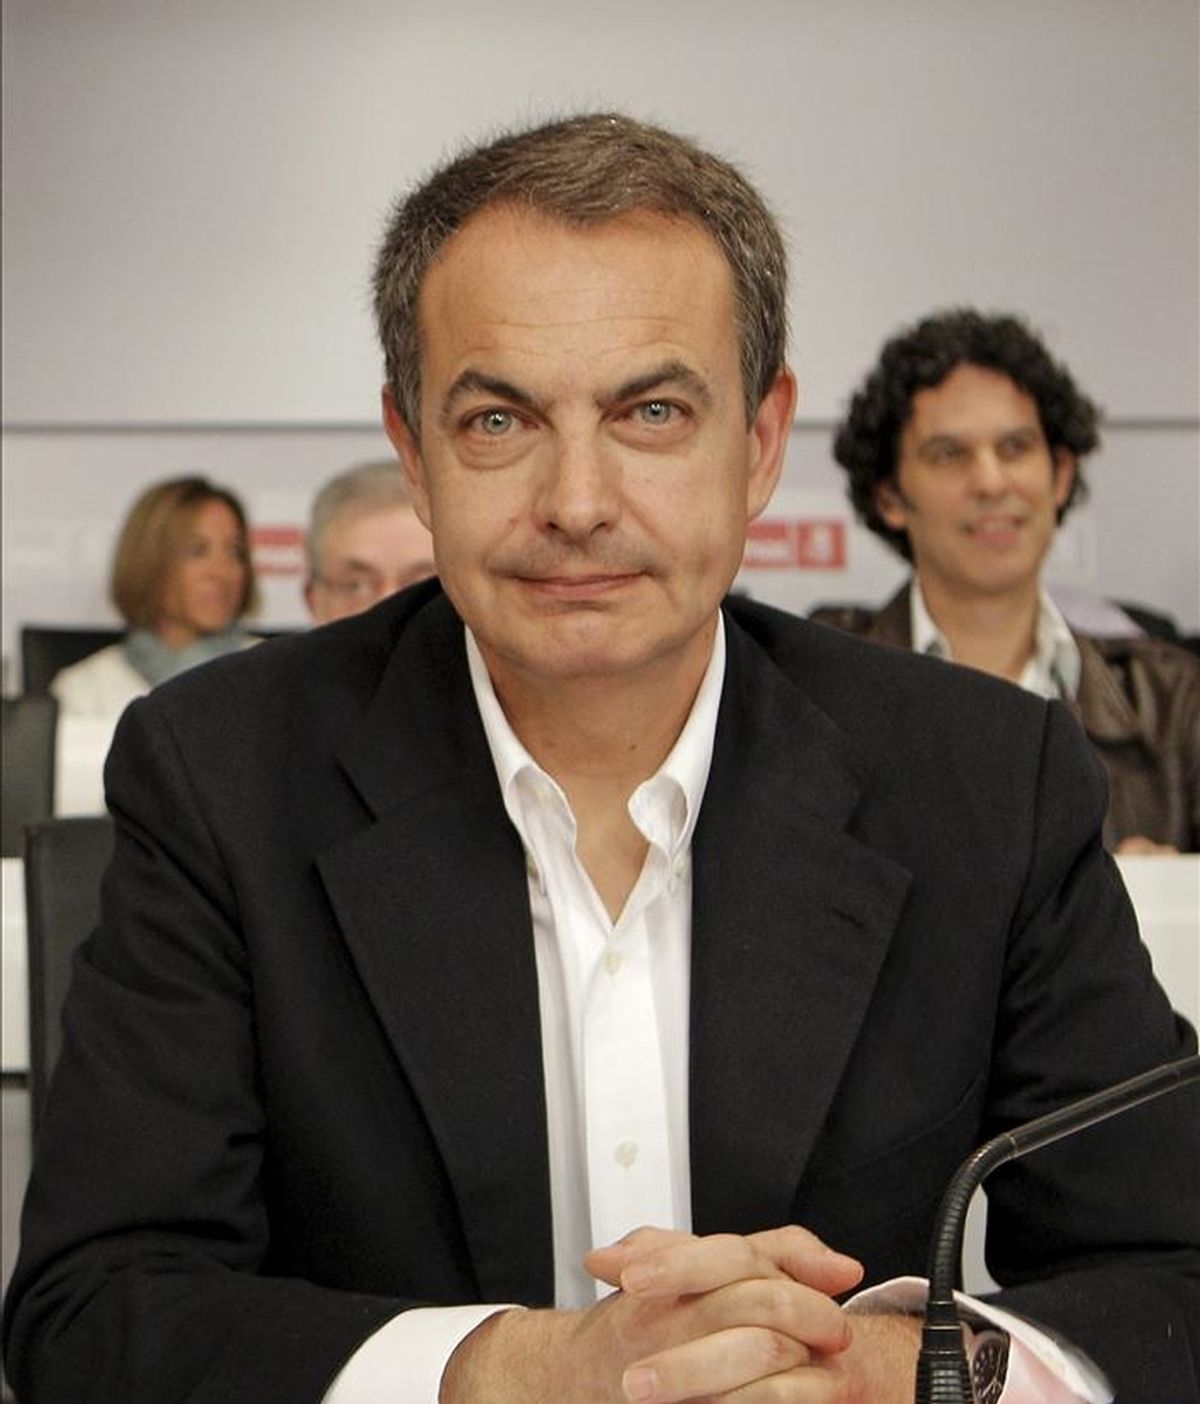 El presidente del Gobierno, José Luis Rodríguez Zapatero, el pasado 2 de abril después de su intervención ante el Comité Federal del PSOE donde anunció que no volverá a ser candidato en las próximas elecciones generales. EFE/Archivo